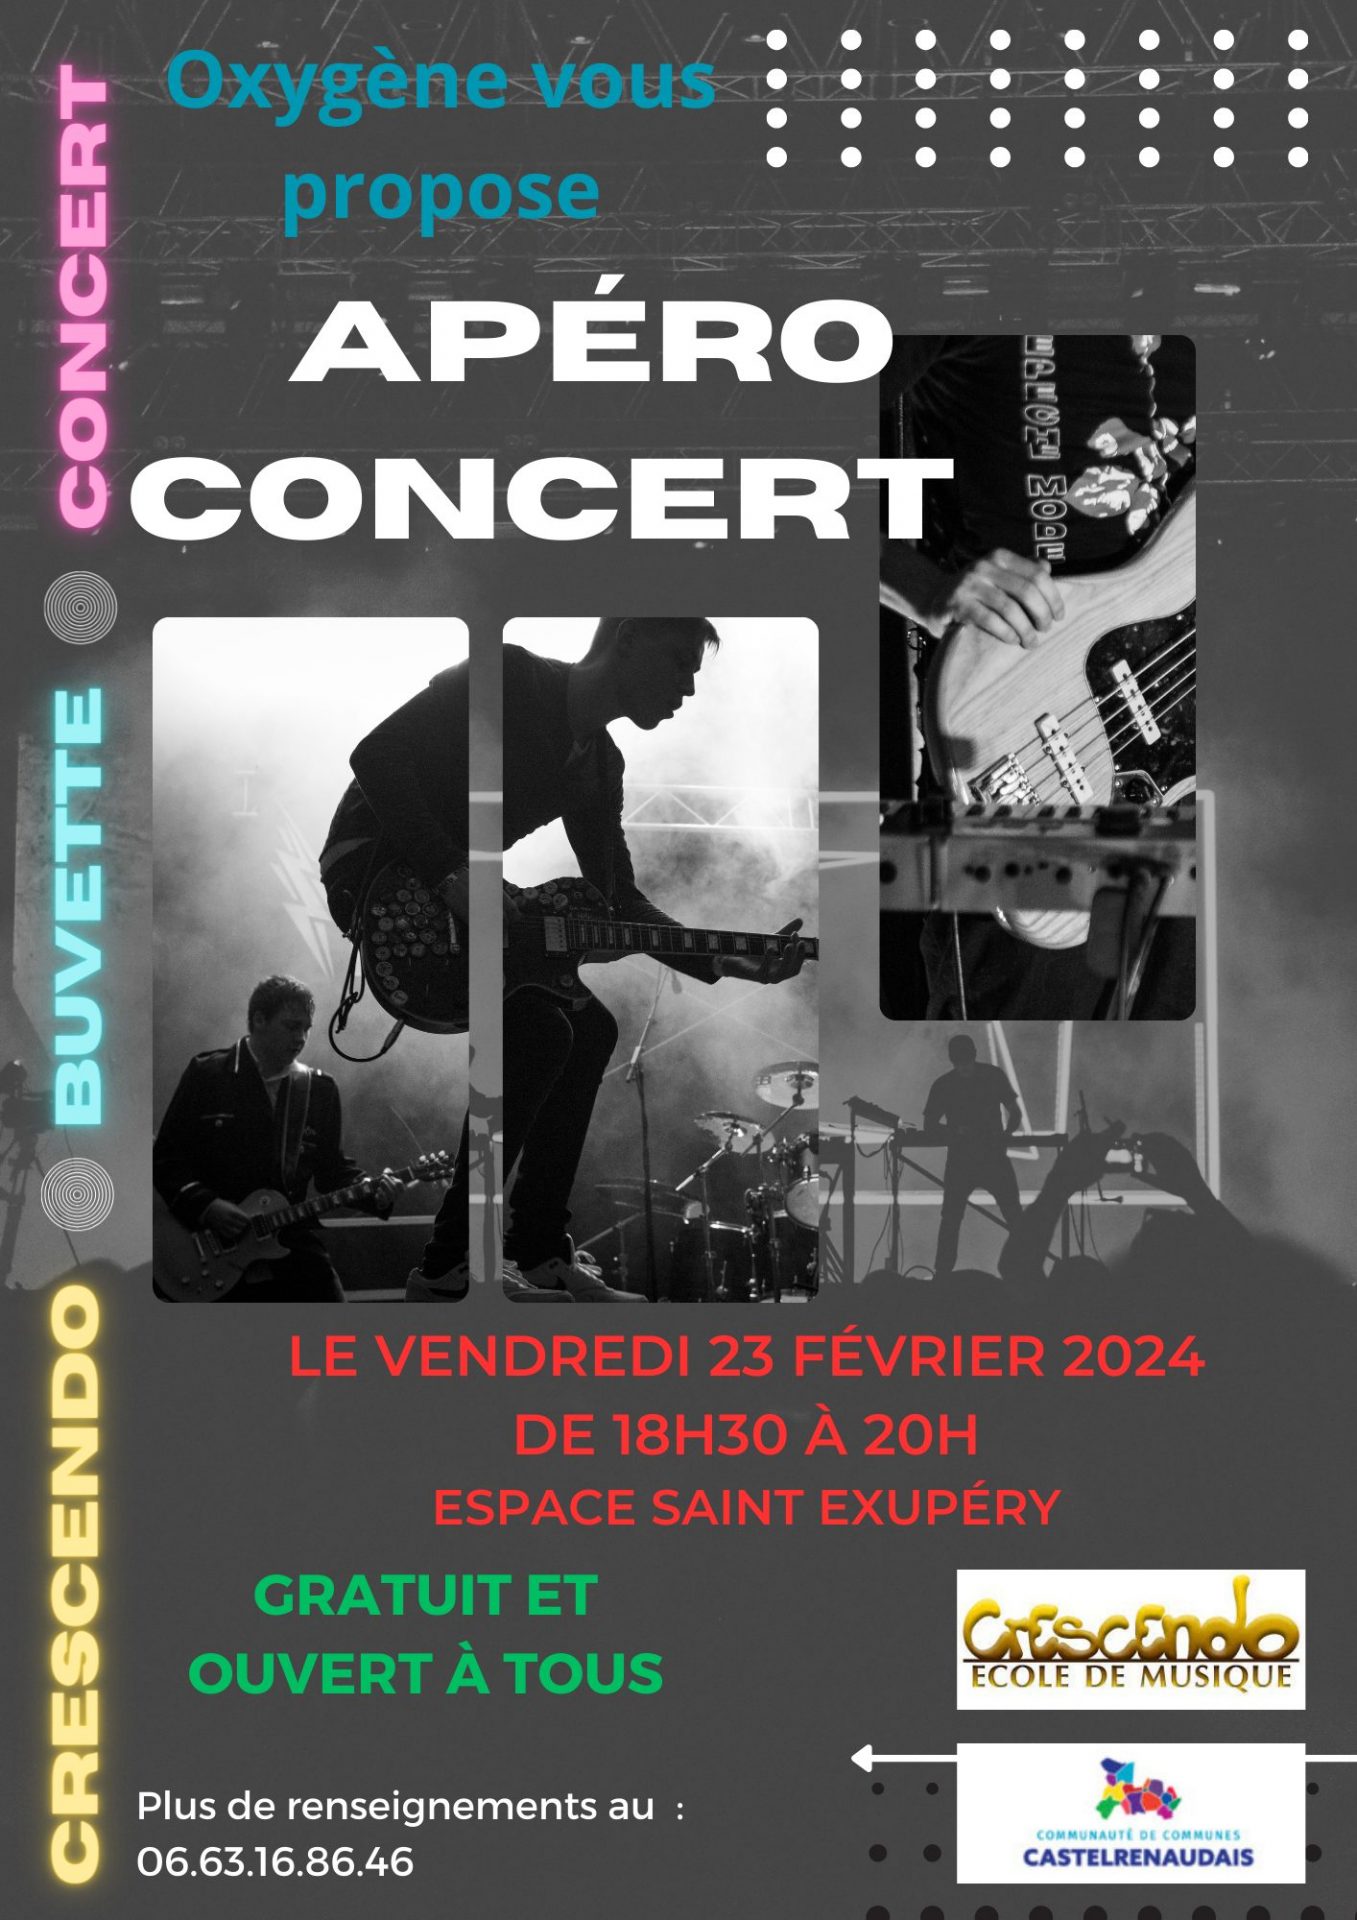 Apéro Concert à l'Espace Saint Exupéry